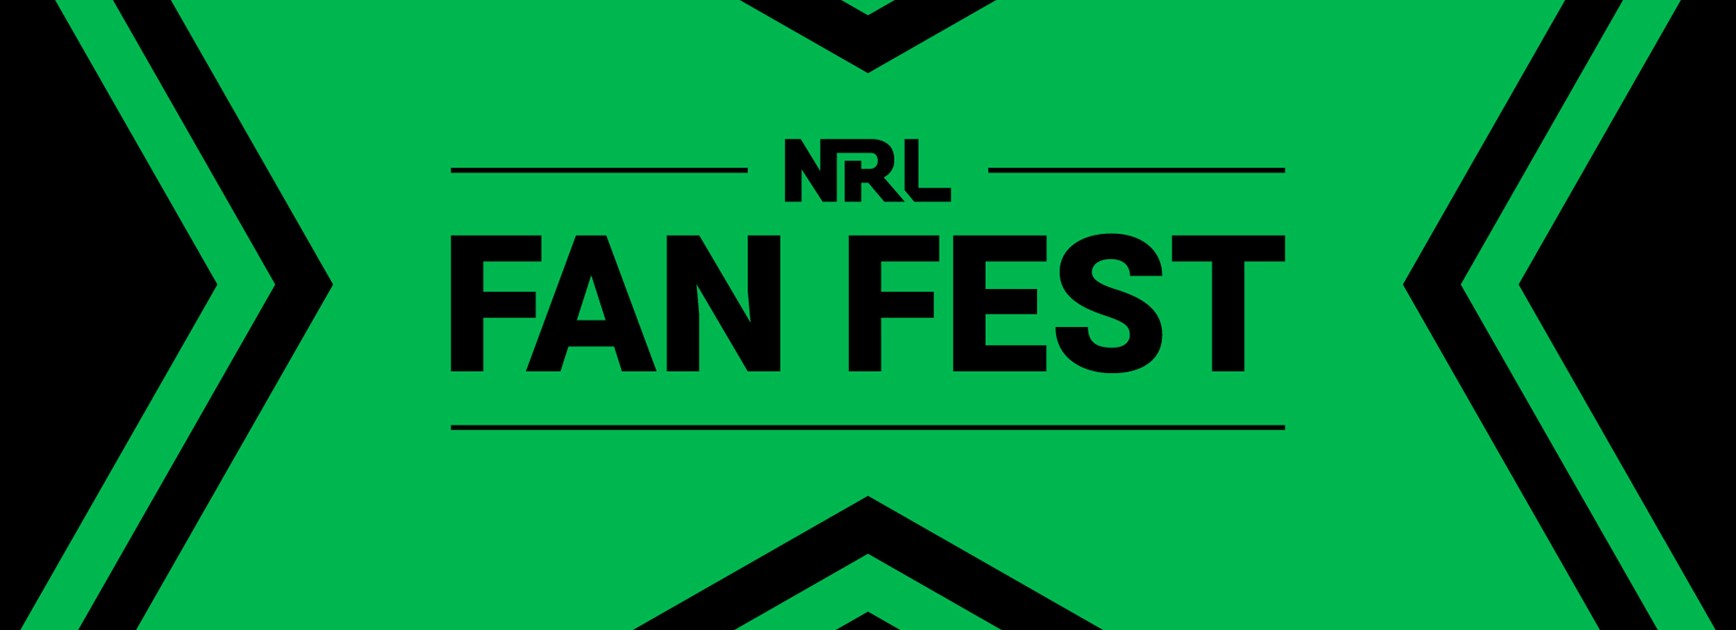 NRL Fan Fest 2018